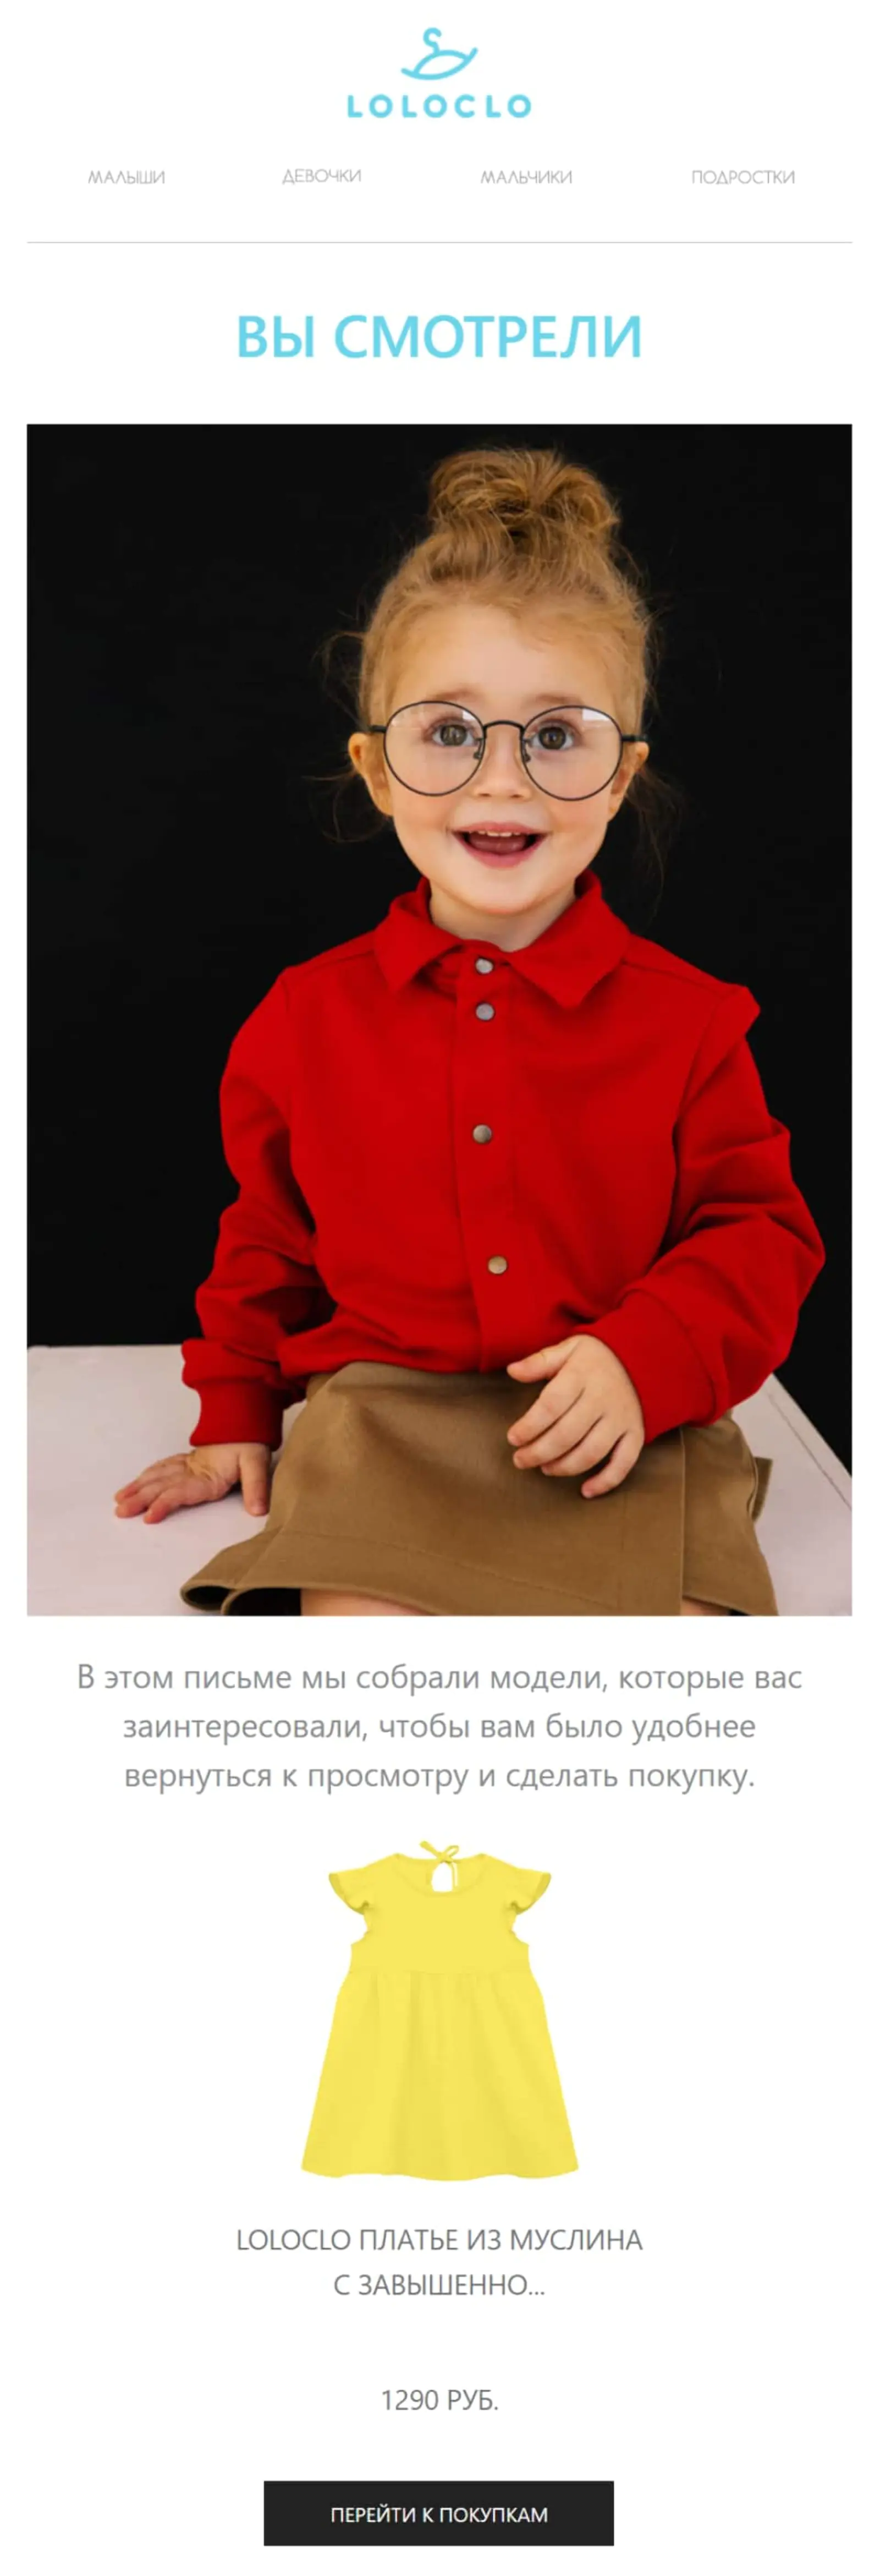 Магазин детской одежды Loloclo в рассылке напоминает клиенту о моделях, которые он смотрел, но почему-то не купил